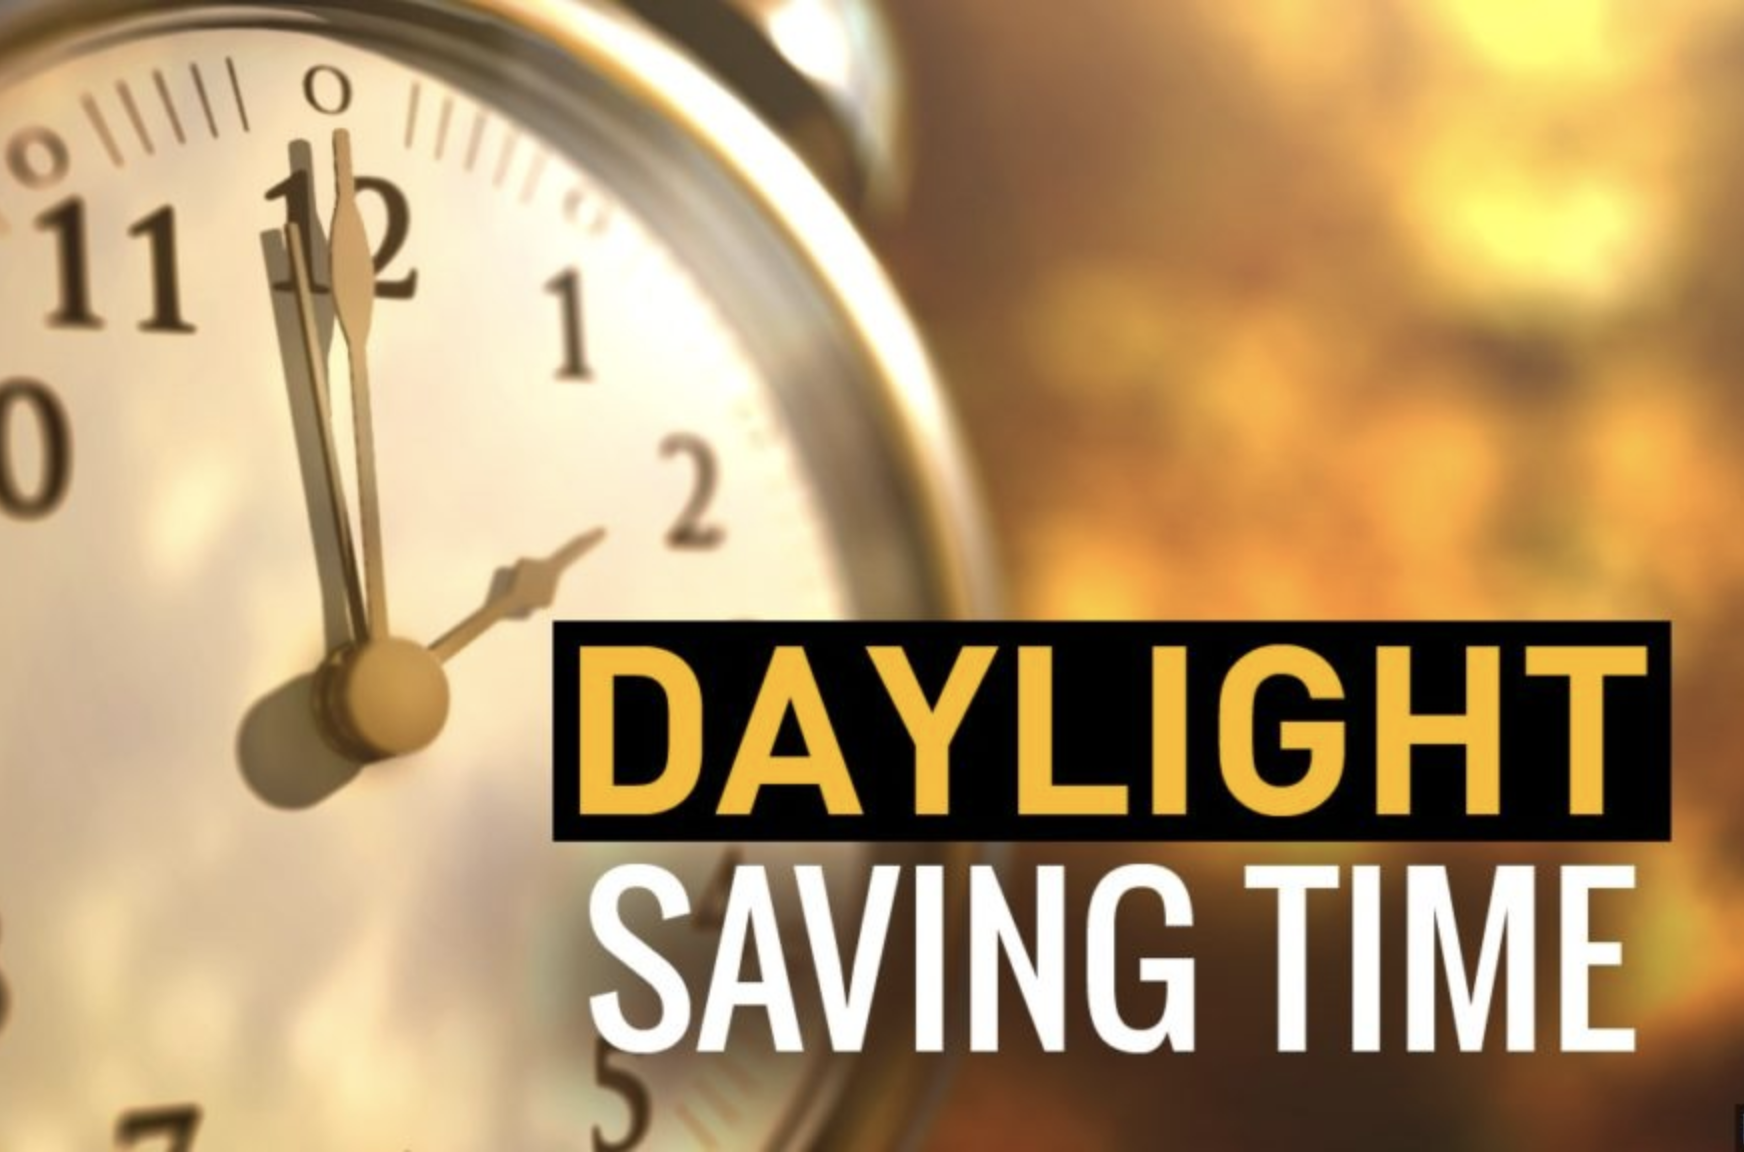 Daylight savings